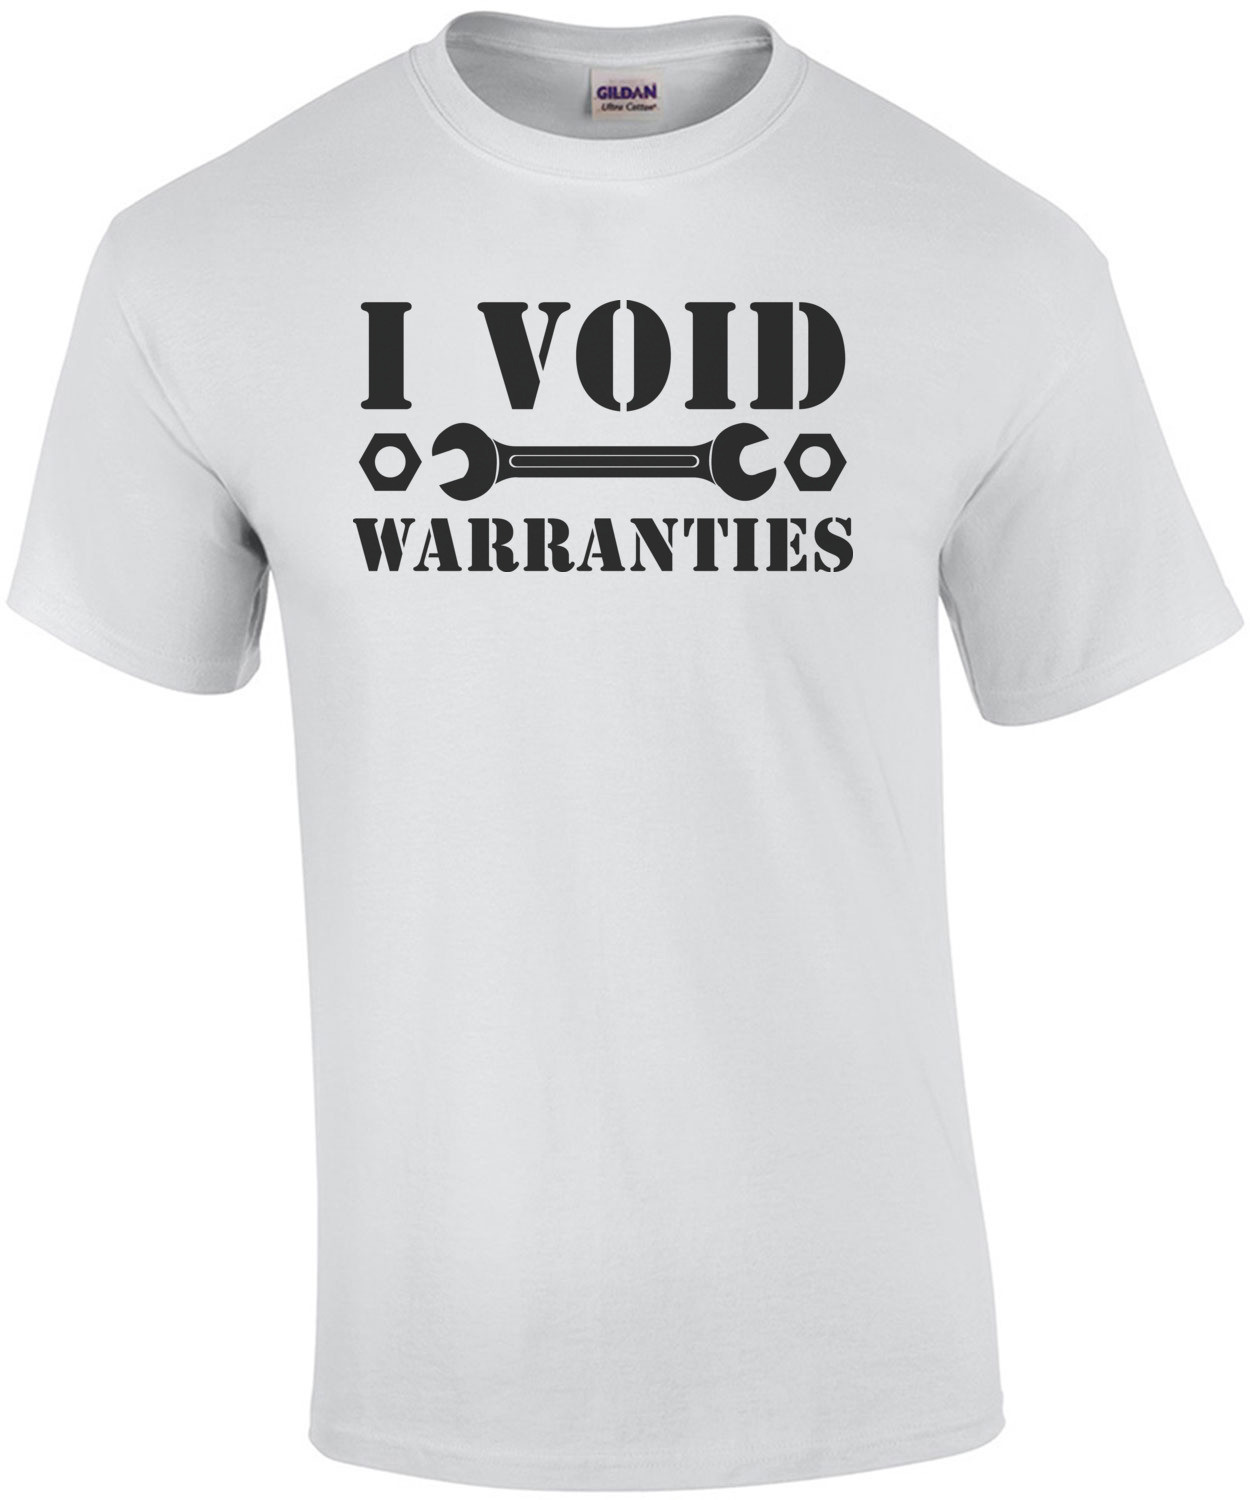 I void warranties t-shirt